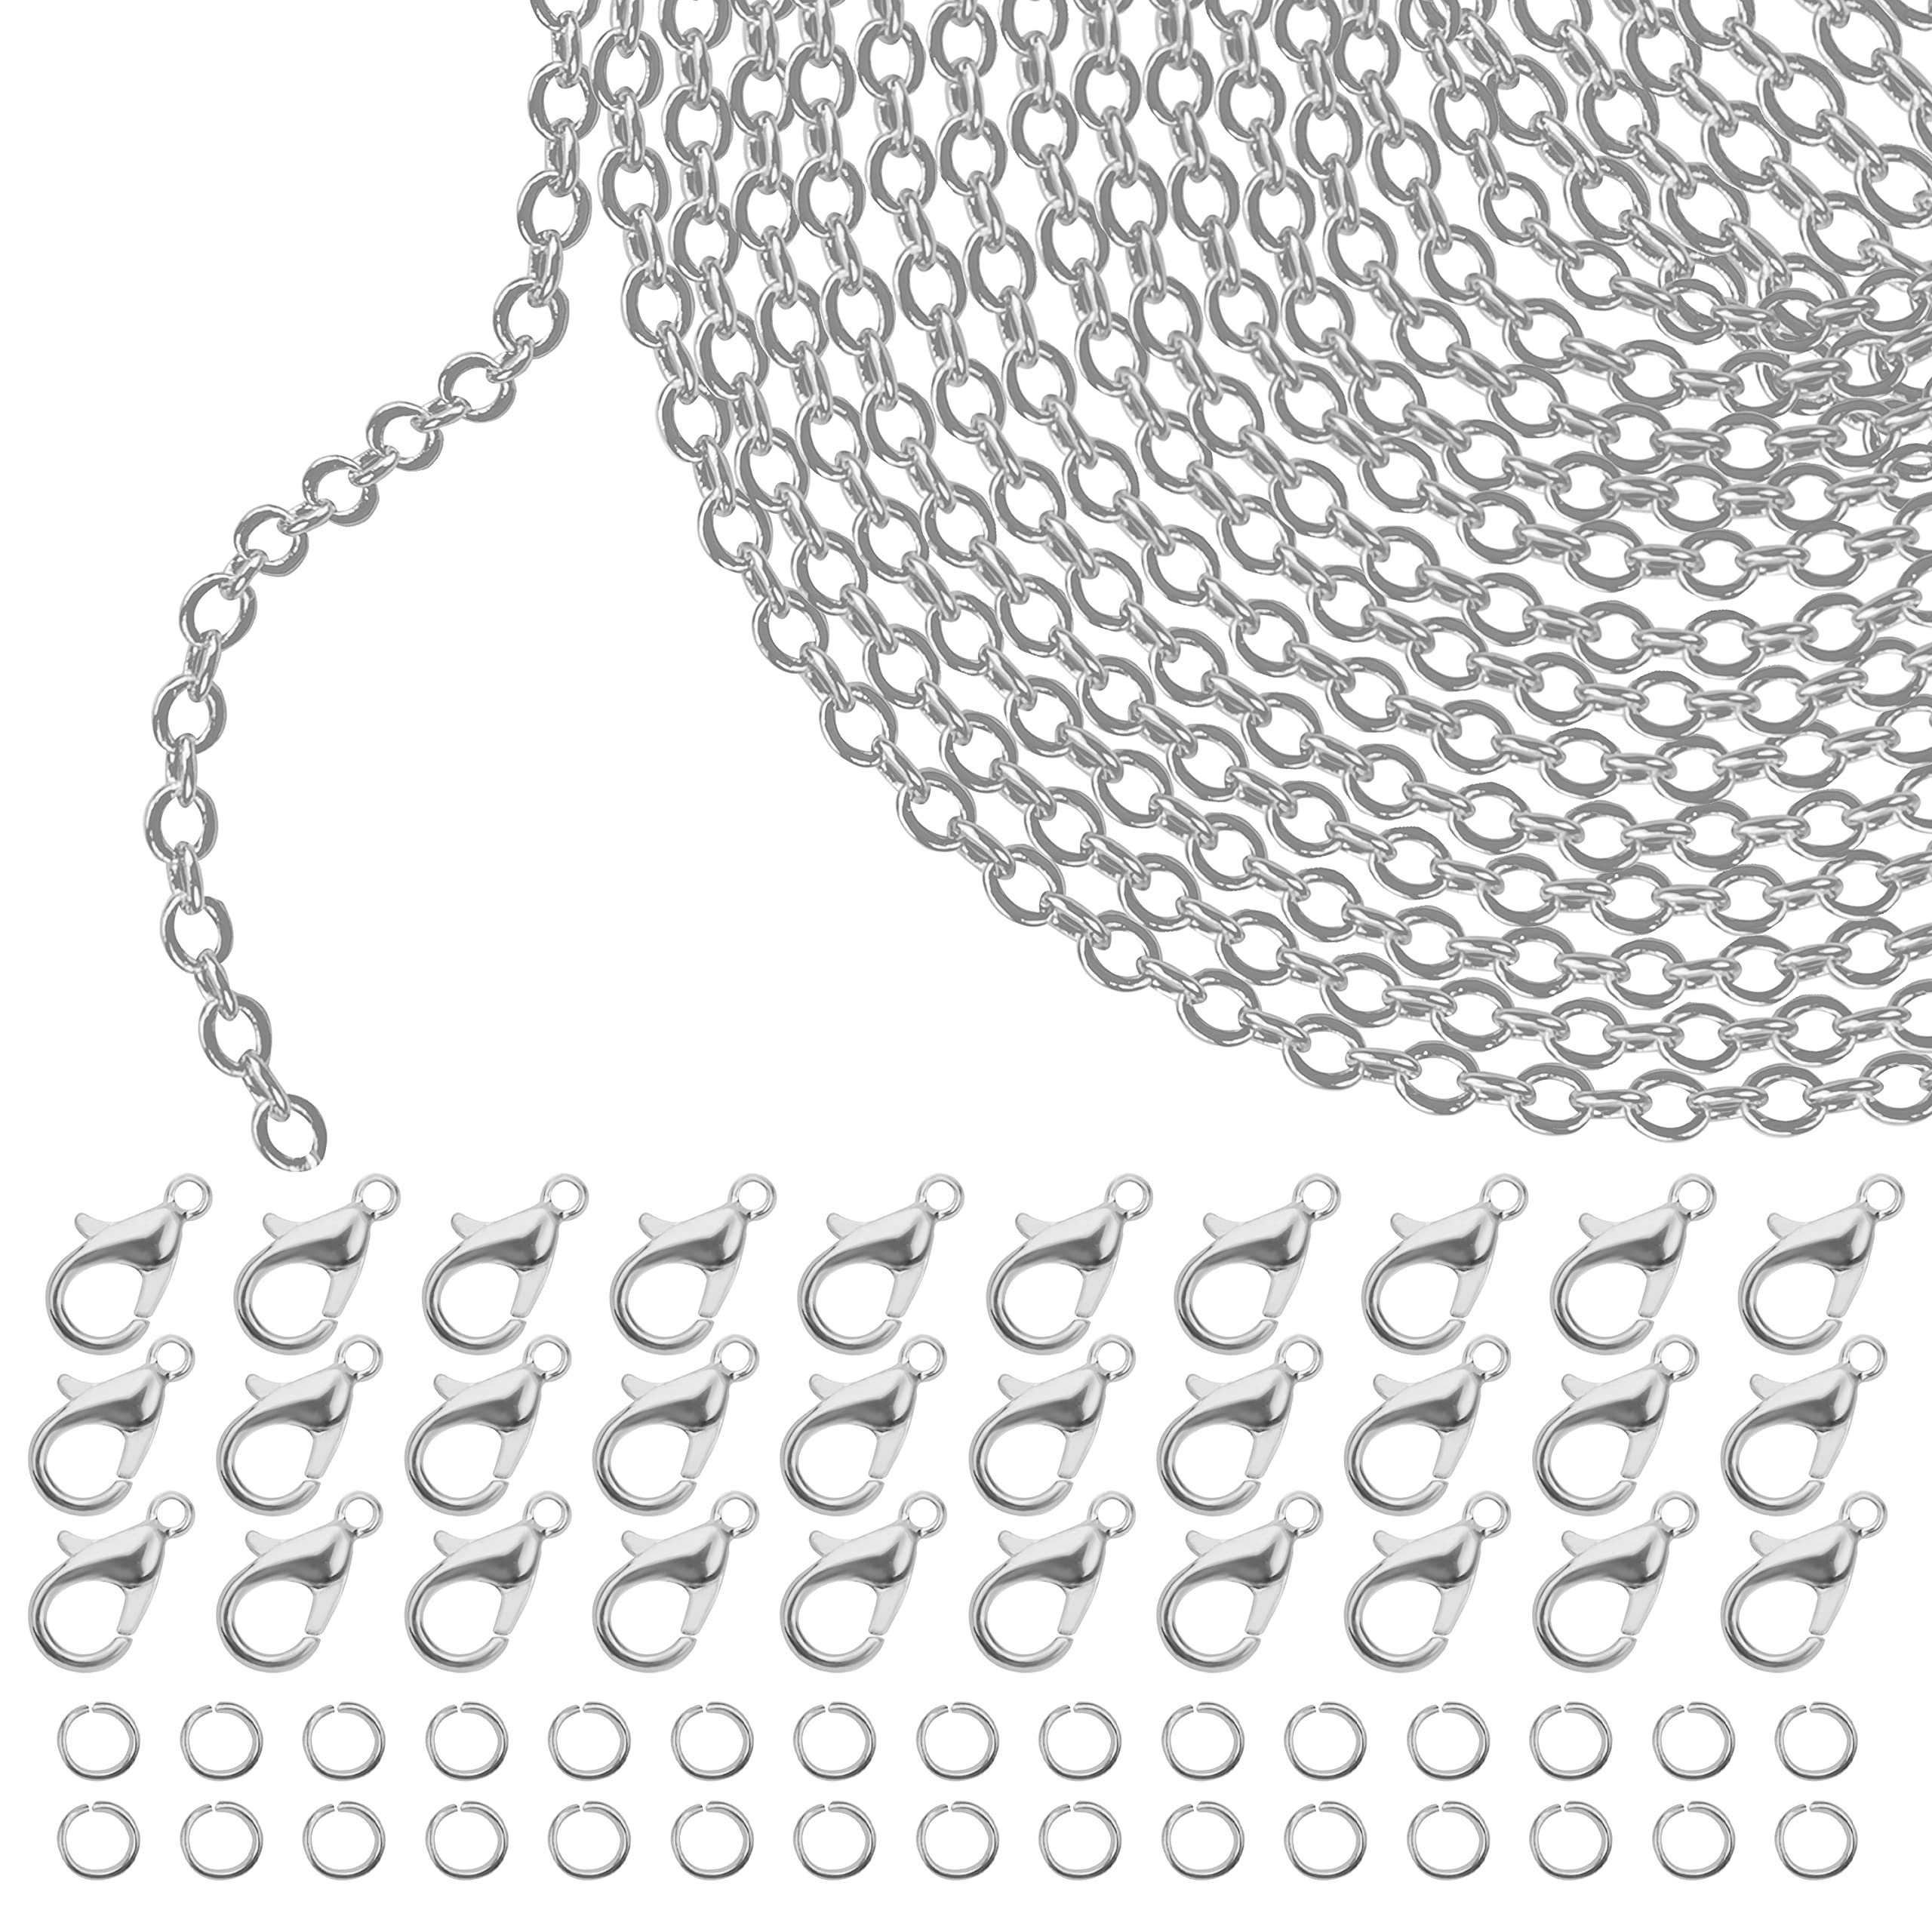 Kurtzy Rundstahlkette 33ft Silberkette für DIY-Halsketten, Metall, 33ft Silver Chain for DIY Necklaces